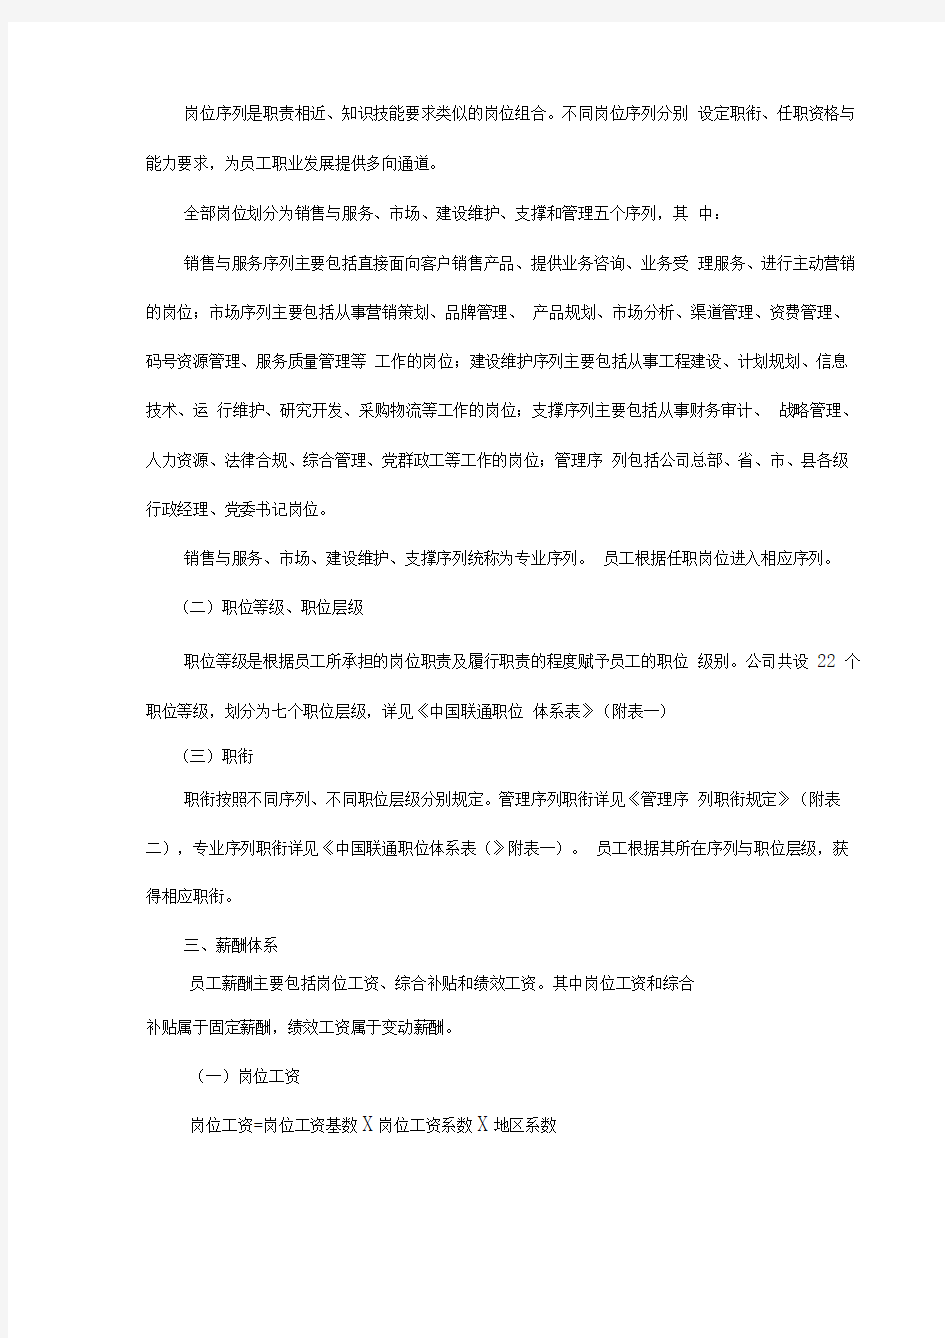 中国联通公司职位薪酬体系实施细则